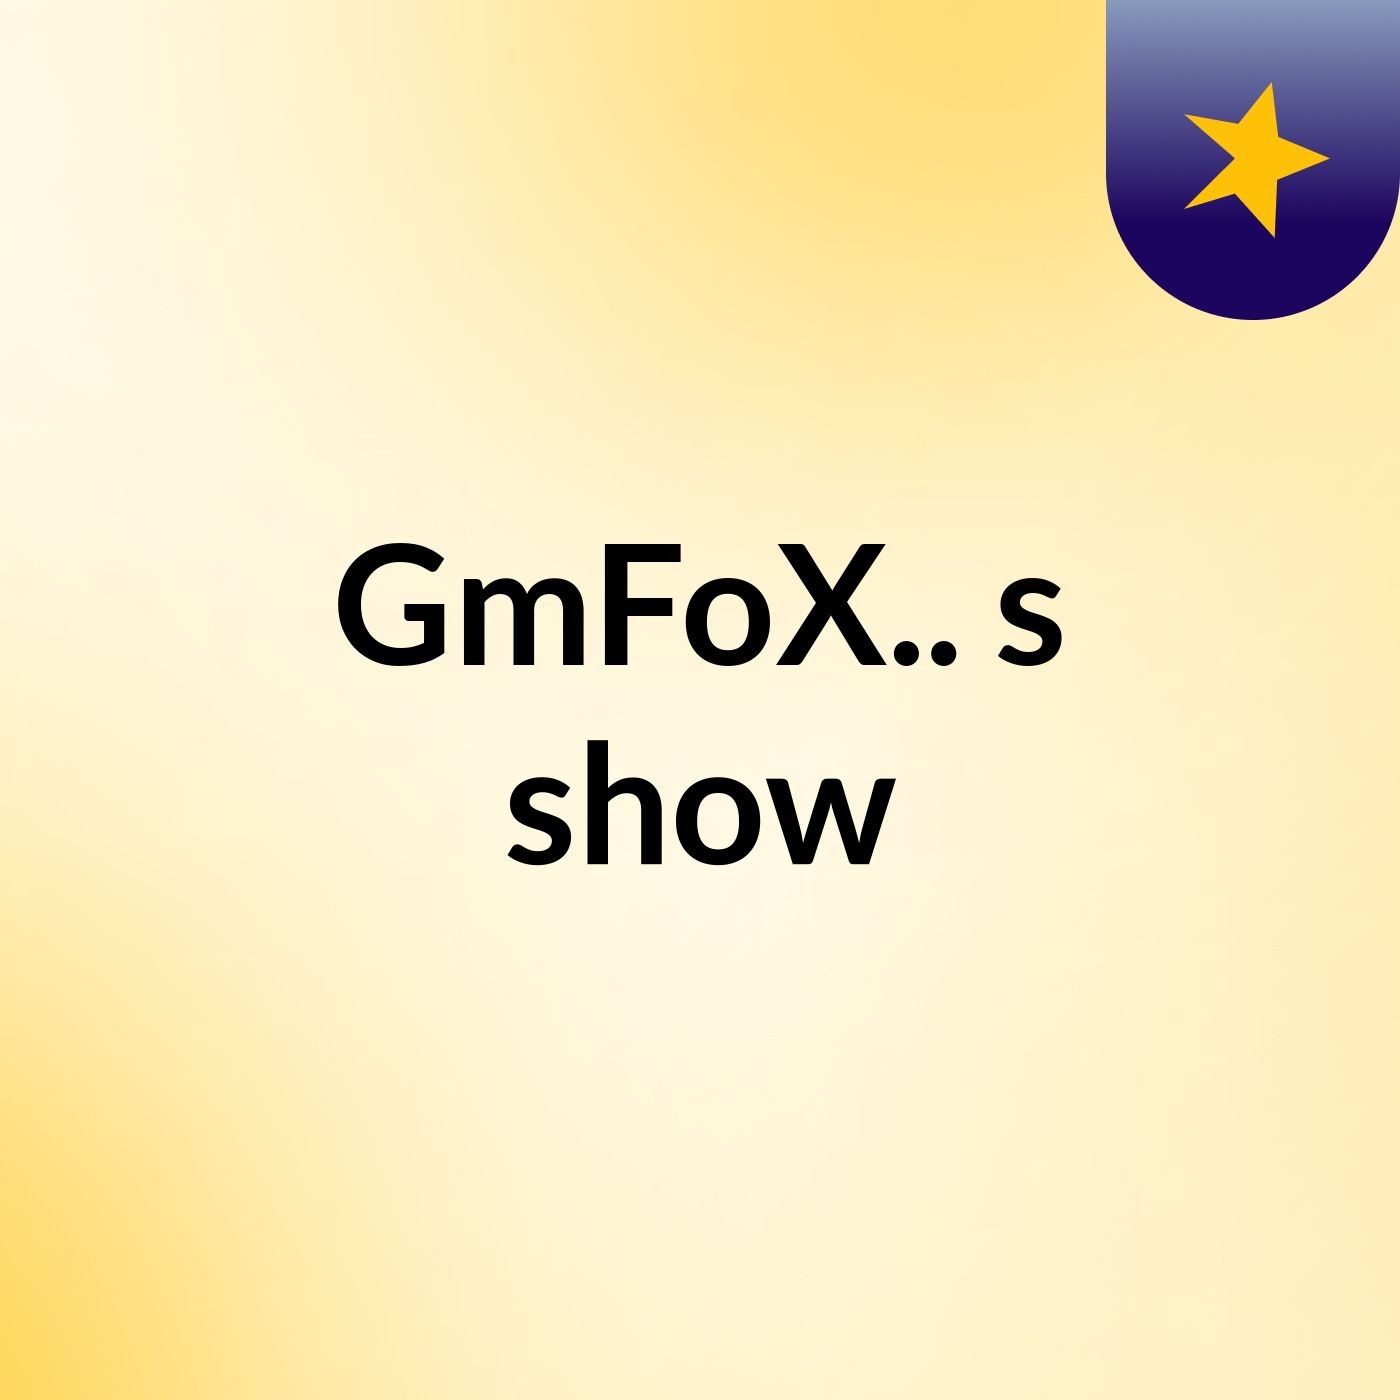 GmFoX..'s show